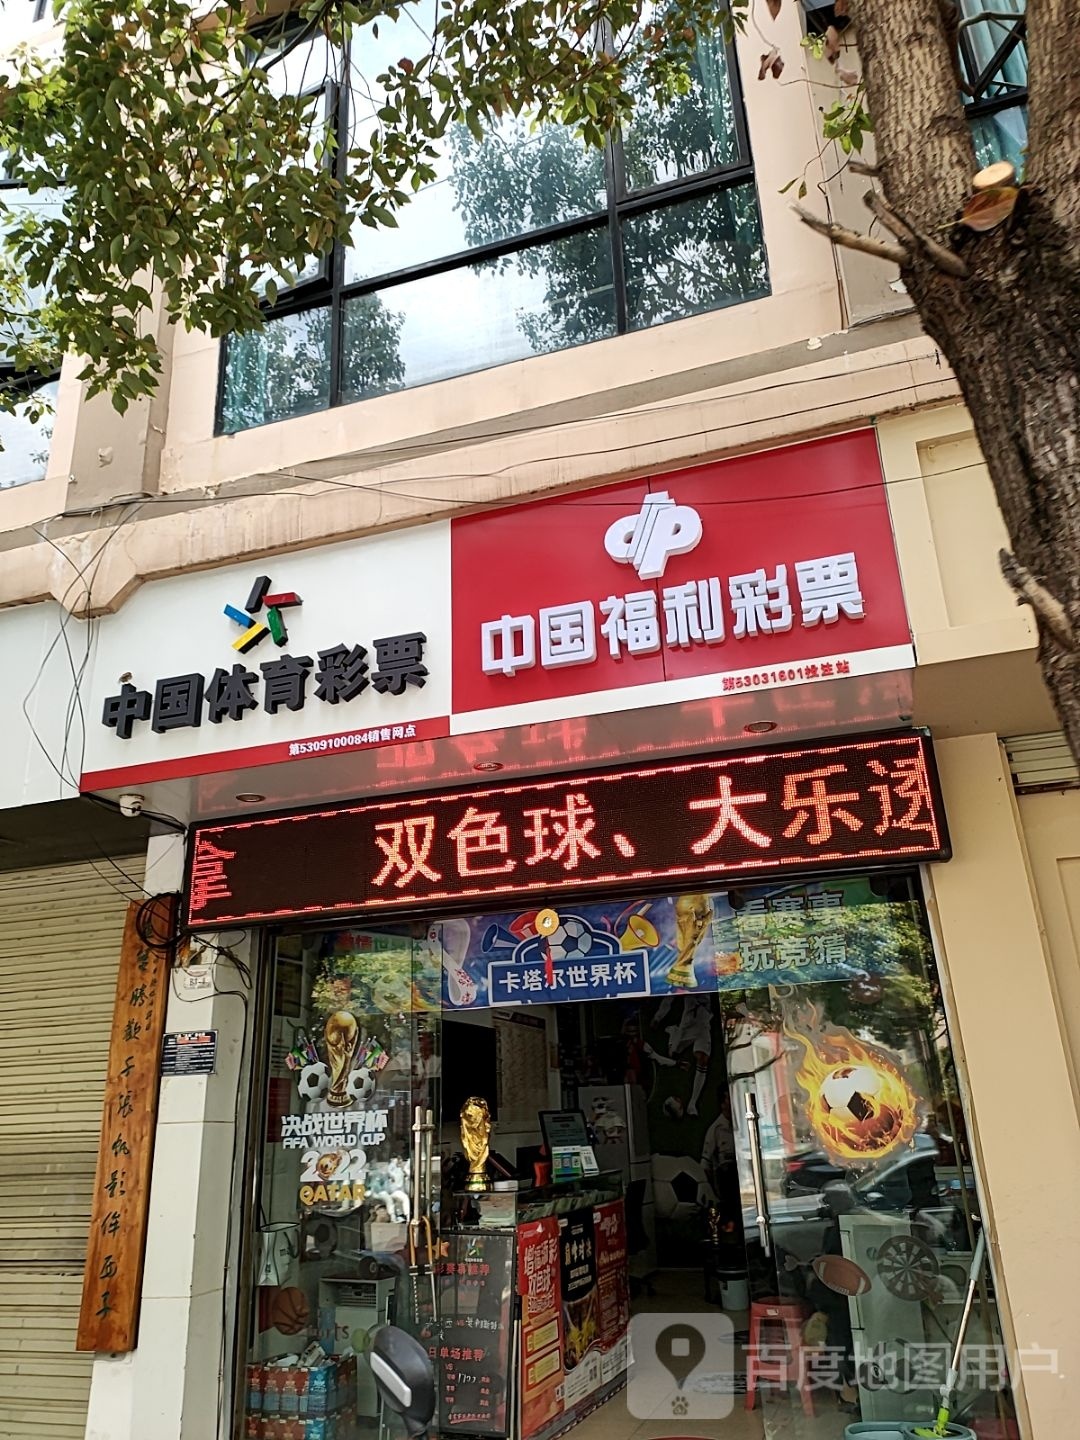 中国体育彩票店(文祥街店)